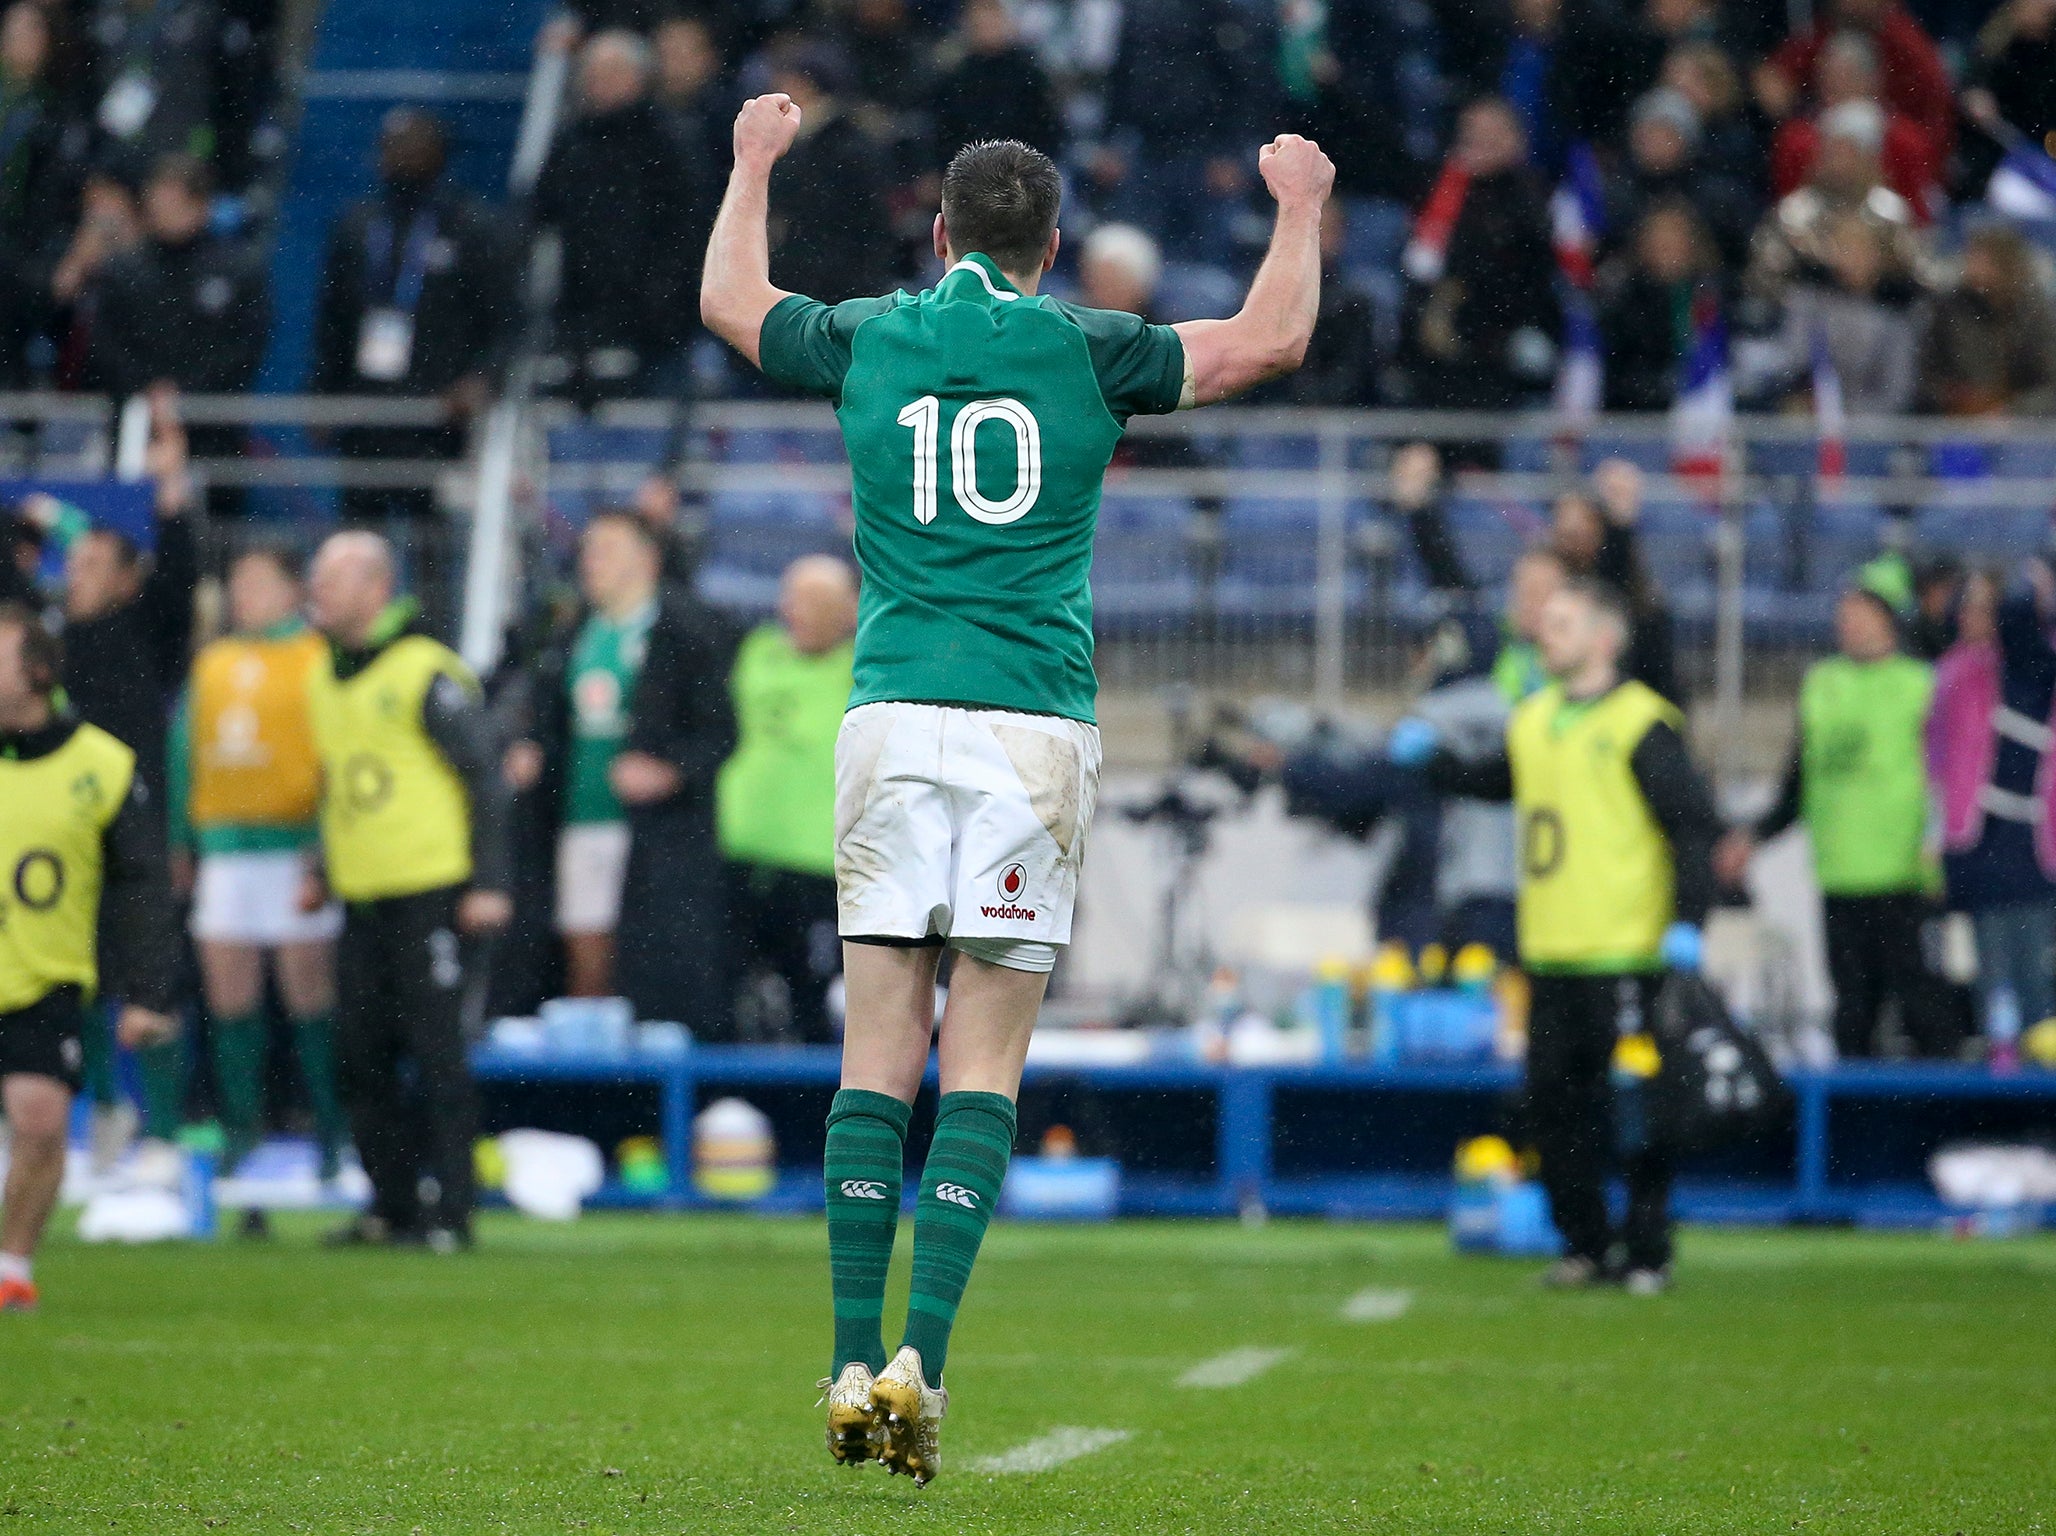 Sexton won the game for Ireland